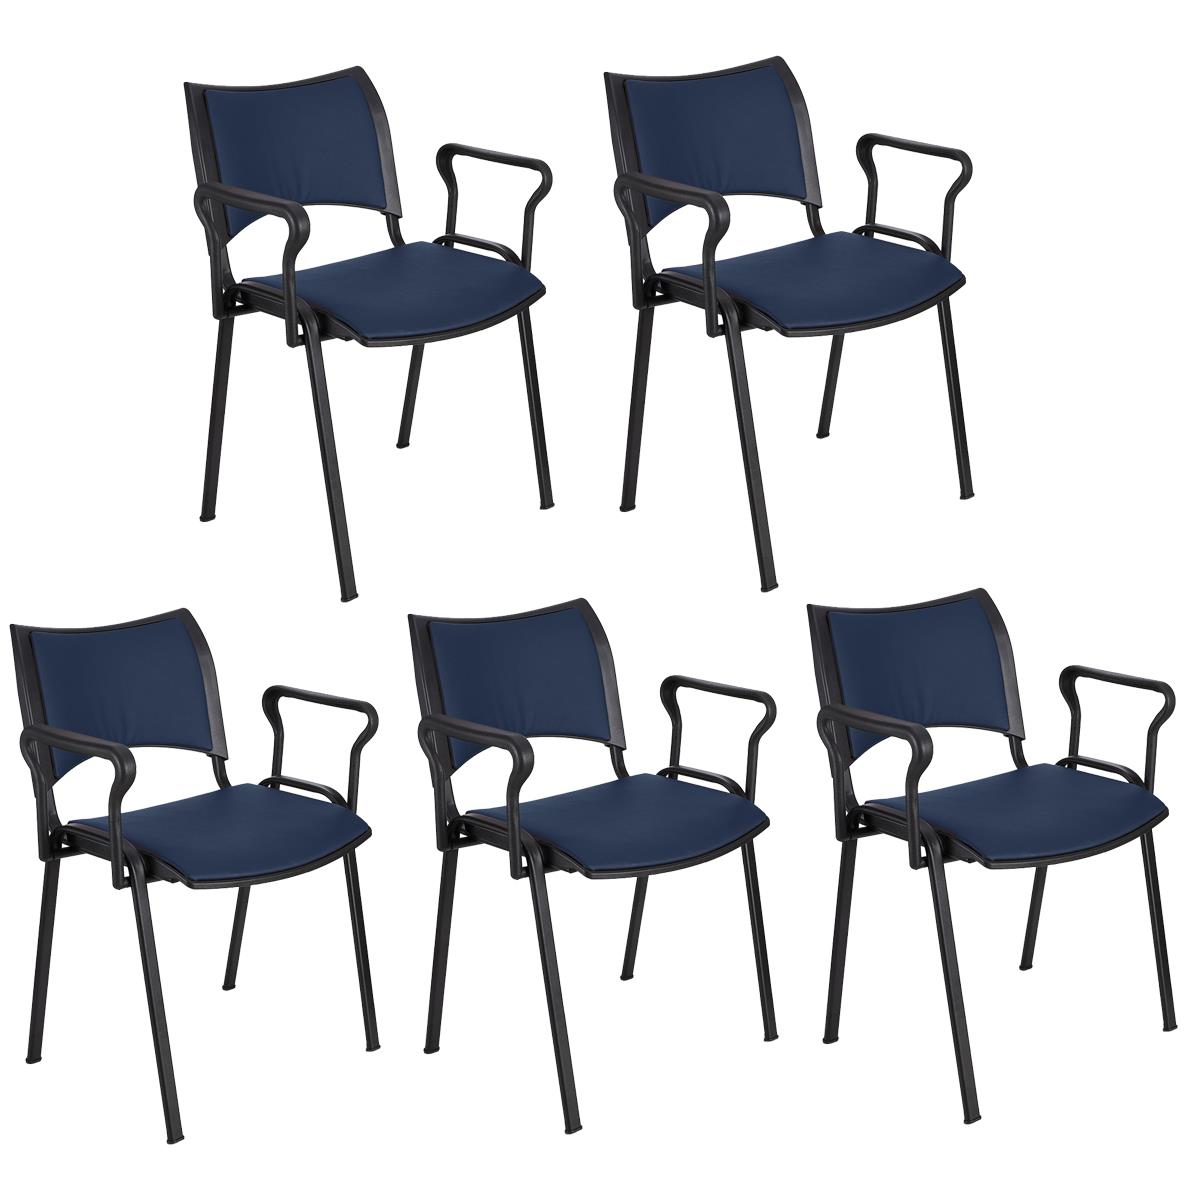 Lote 5 Cadeiras de Visita ROMEL PELE COM BRAÇOS, Empilhável, Pernas Pretas, Azul